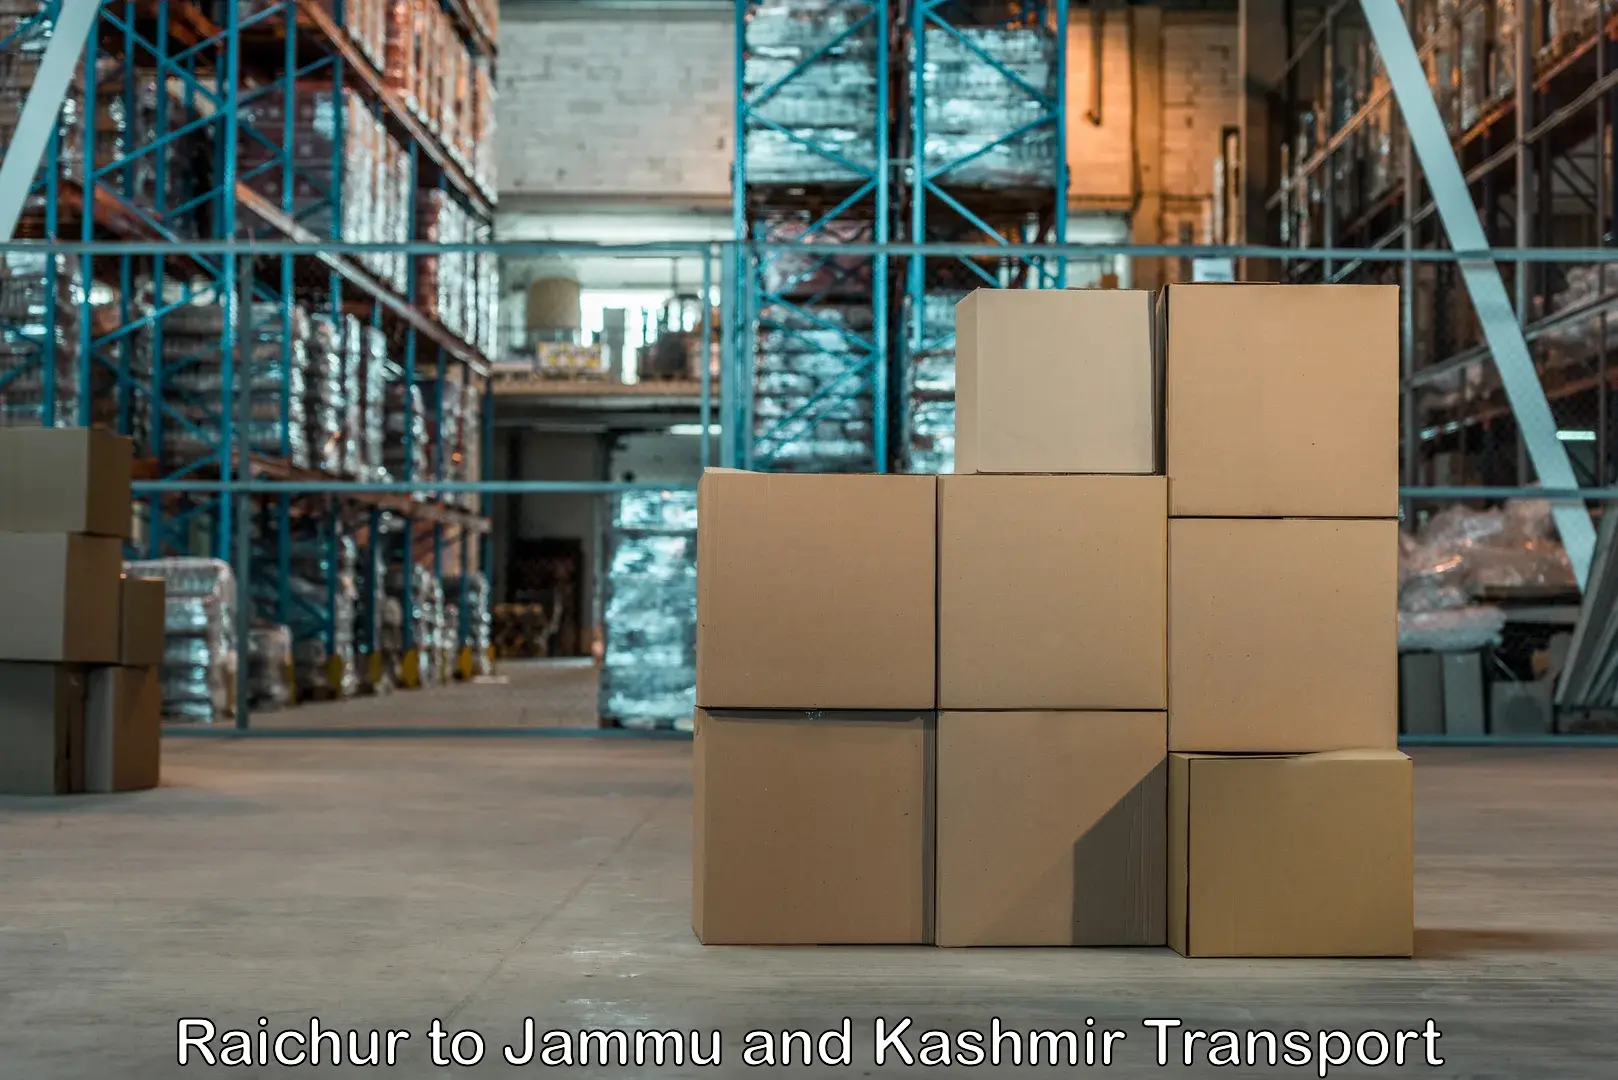 Bike shipping service Raichur to Srinagar Kashmir